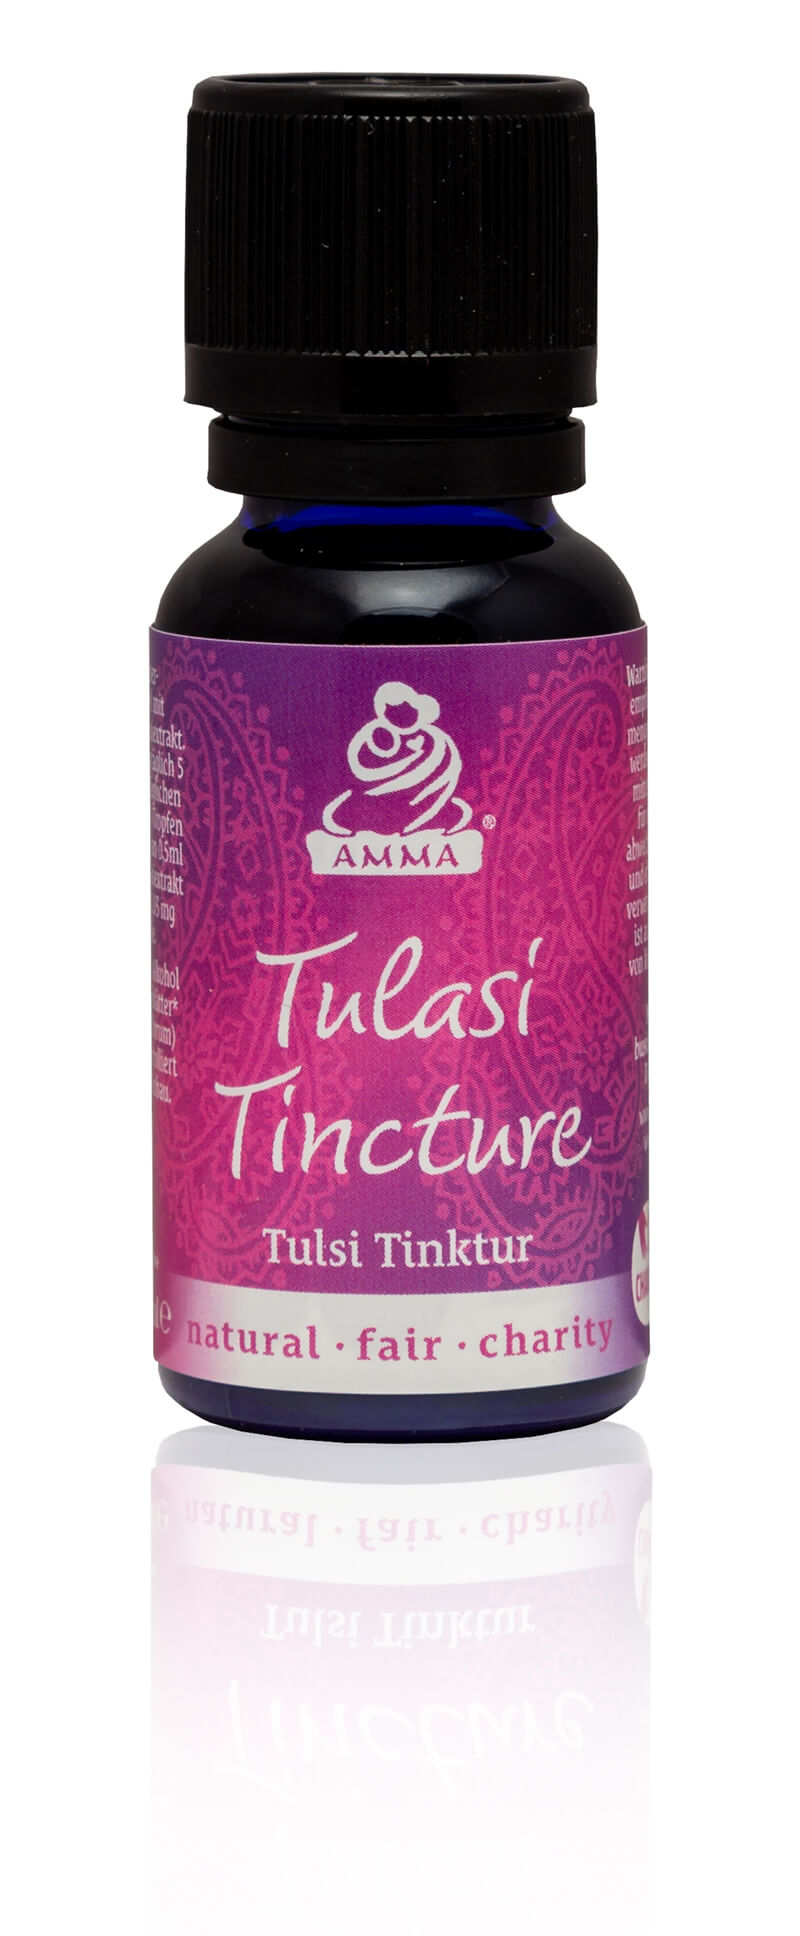 Tulasi Tincture, organic